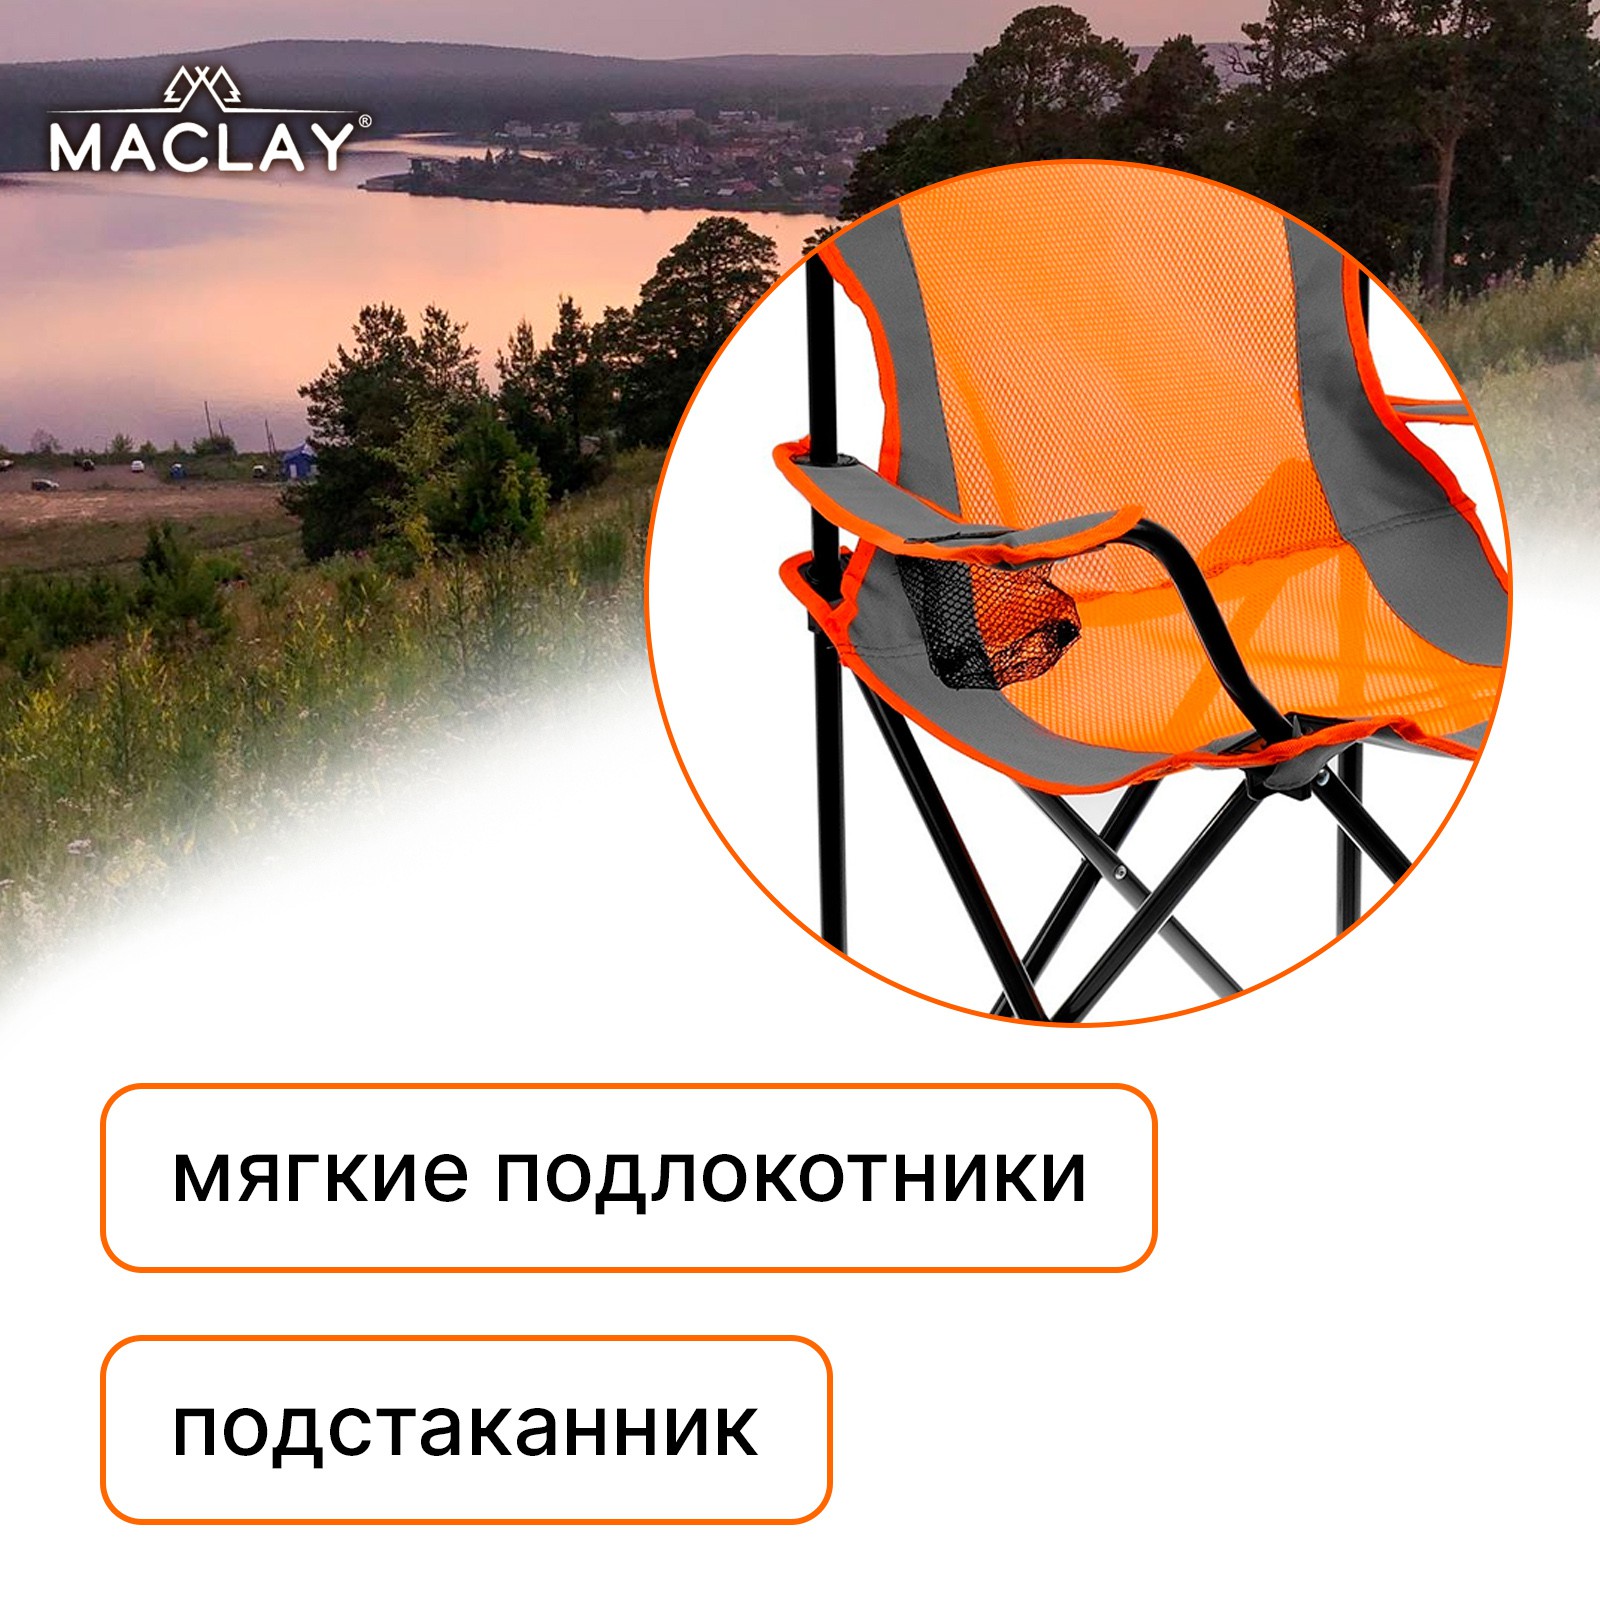 Кресло Maclay туристическое складное с подстаканником р. 50 х 50 х 80 см до 100 кг - фото 2